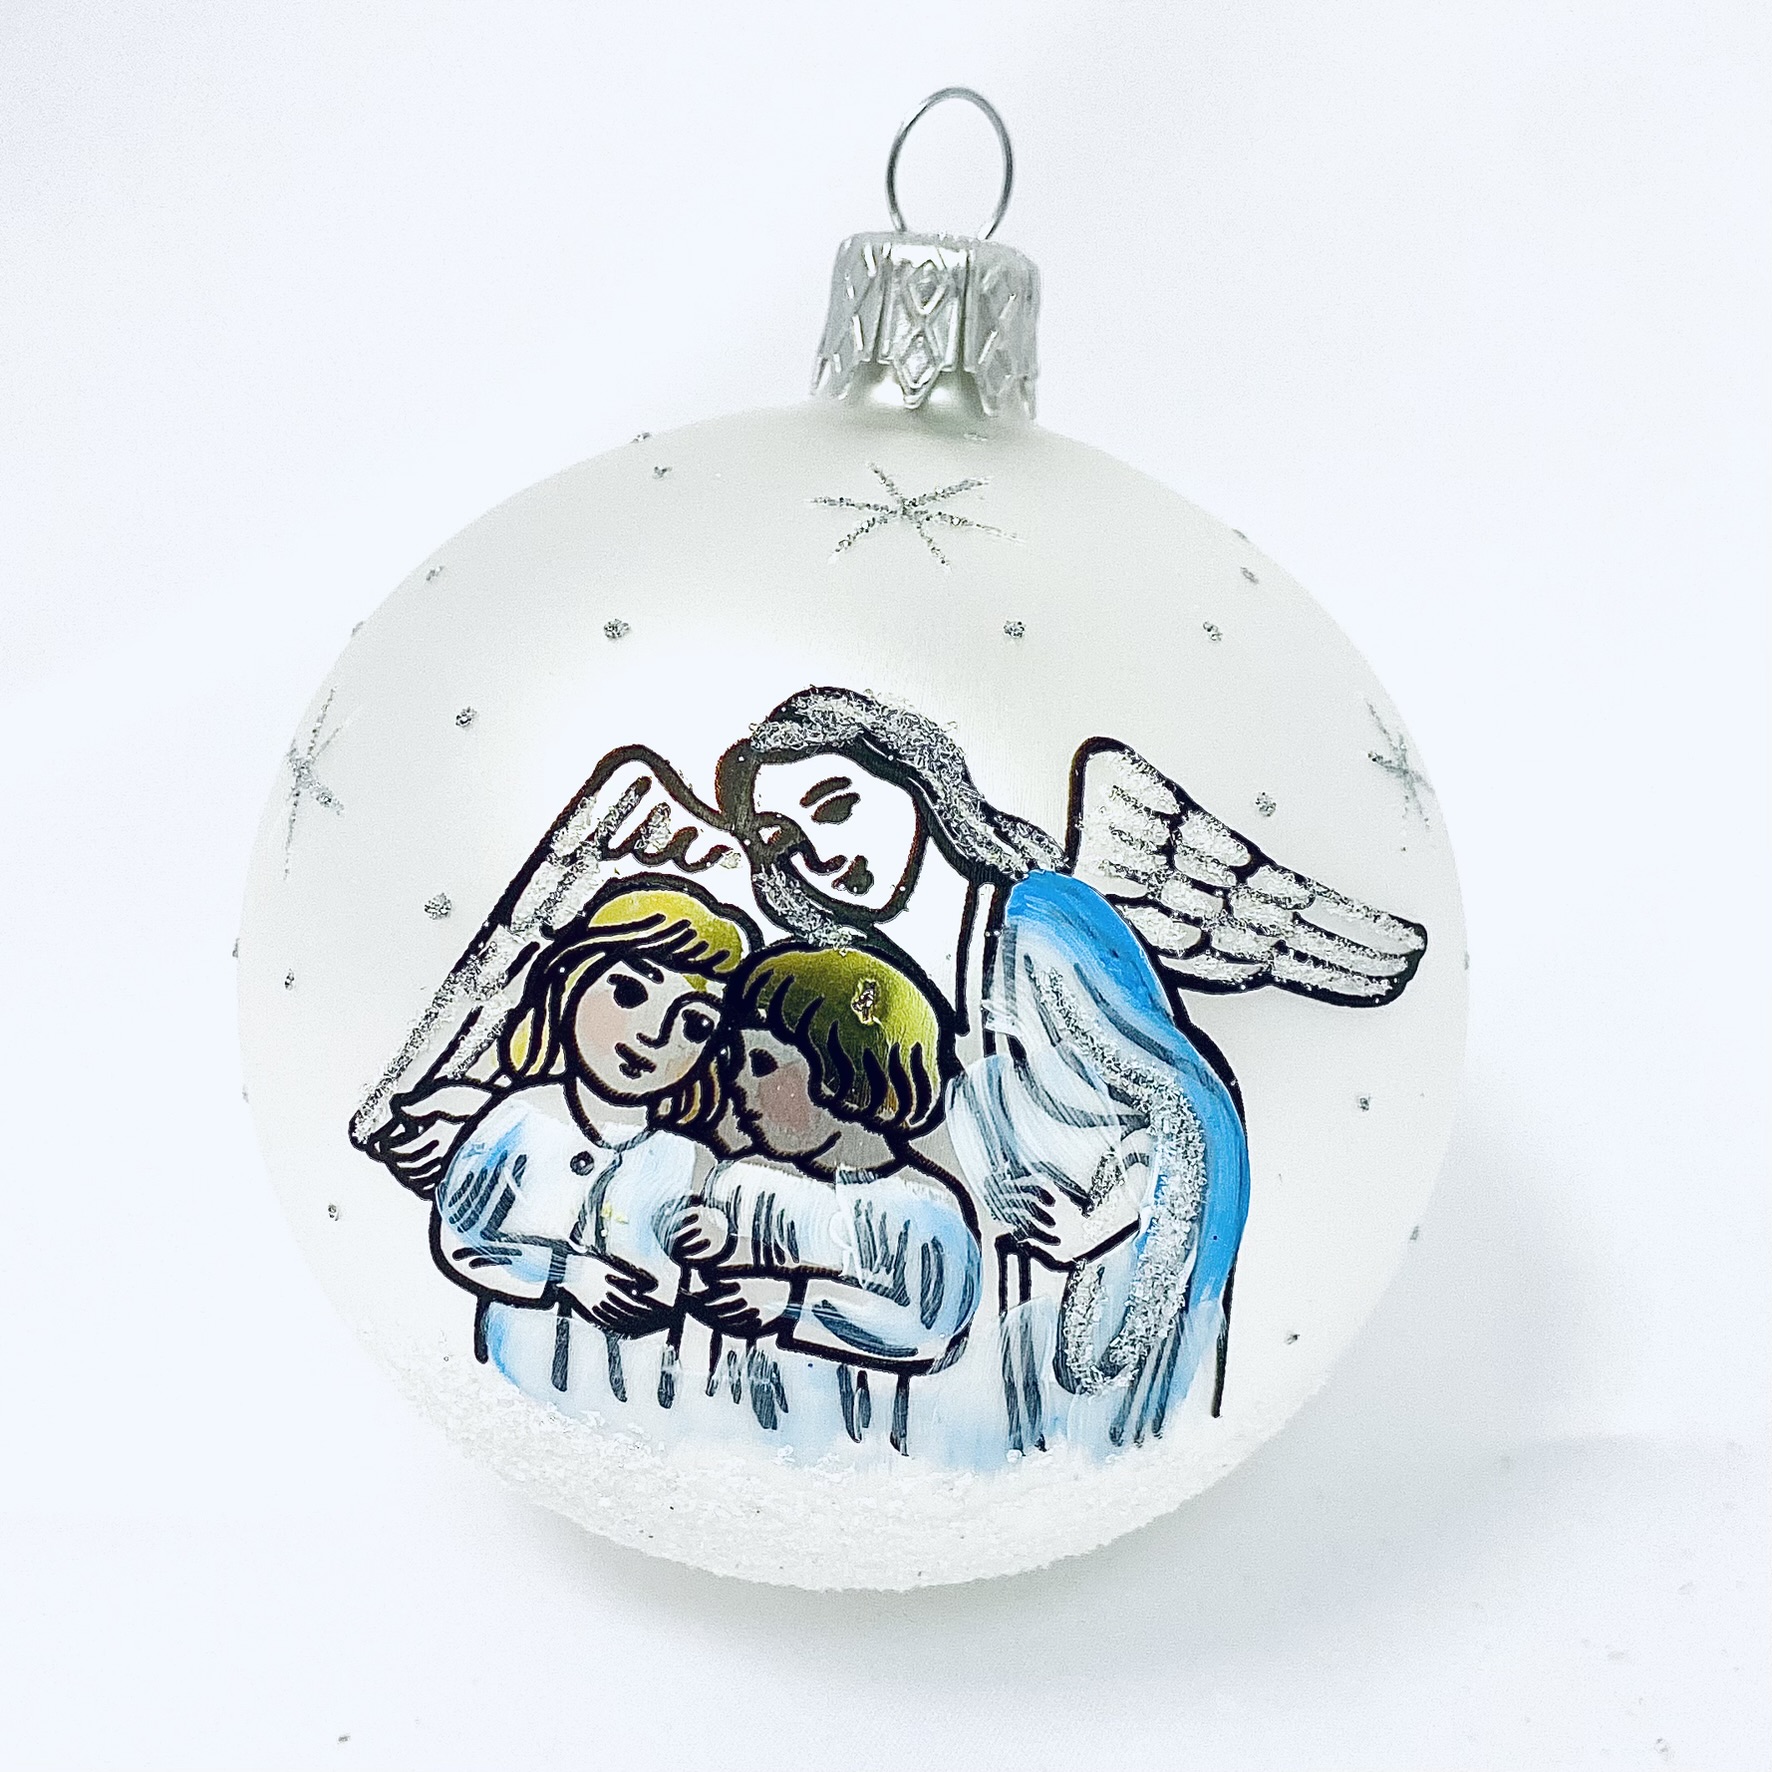 Skleněná vánoční ozdoba s textem na přání - Děti v objetí anděla s vlastním textem (bílá, 1 ks, 8 cm) Balení: 1ks, Barva: bílá, Velikost: 8 cm